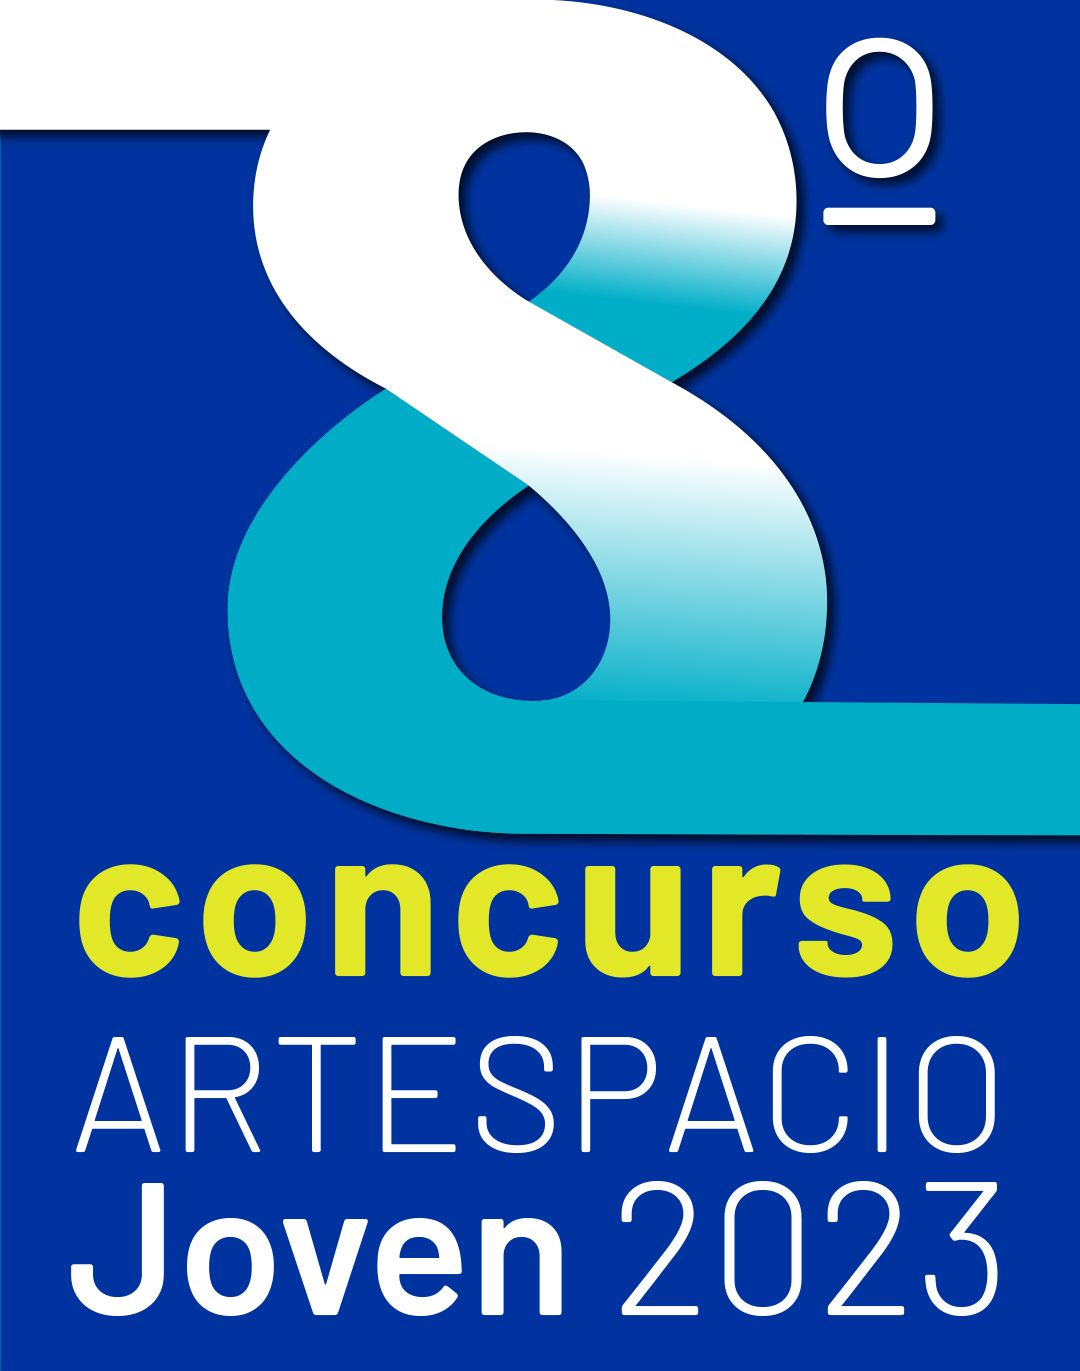 afiche del concurso artespacio joven con un numero ocho en color azul